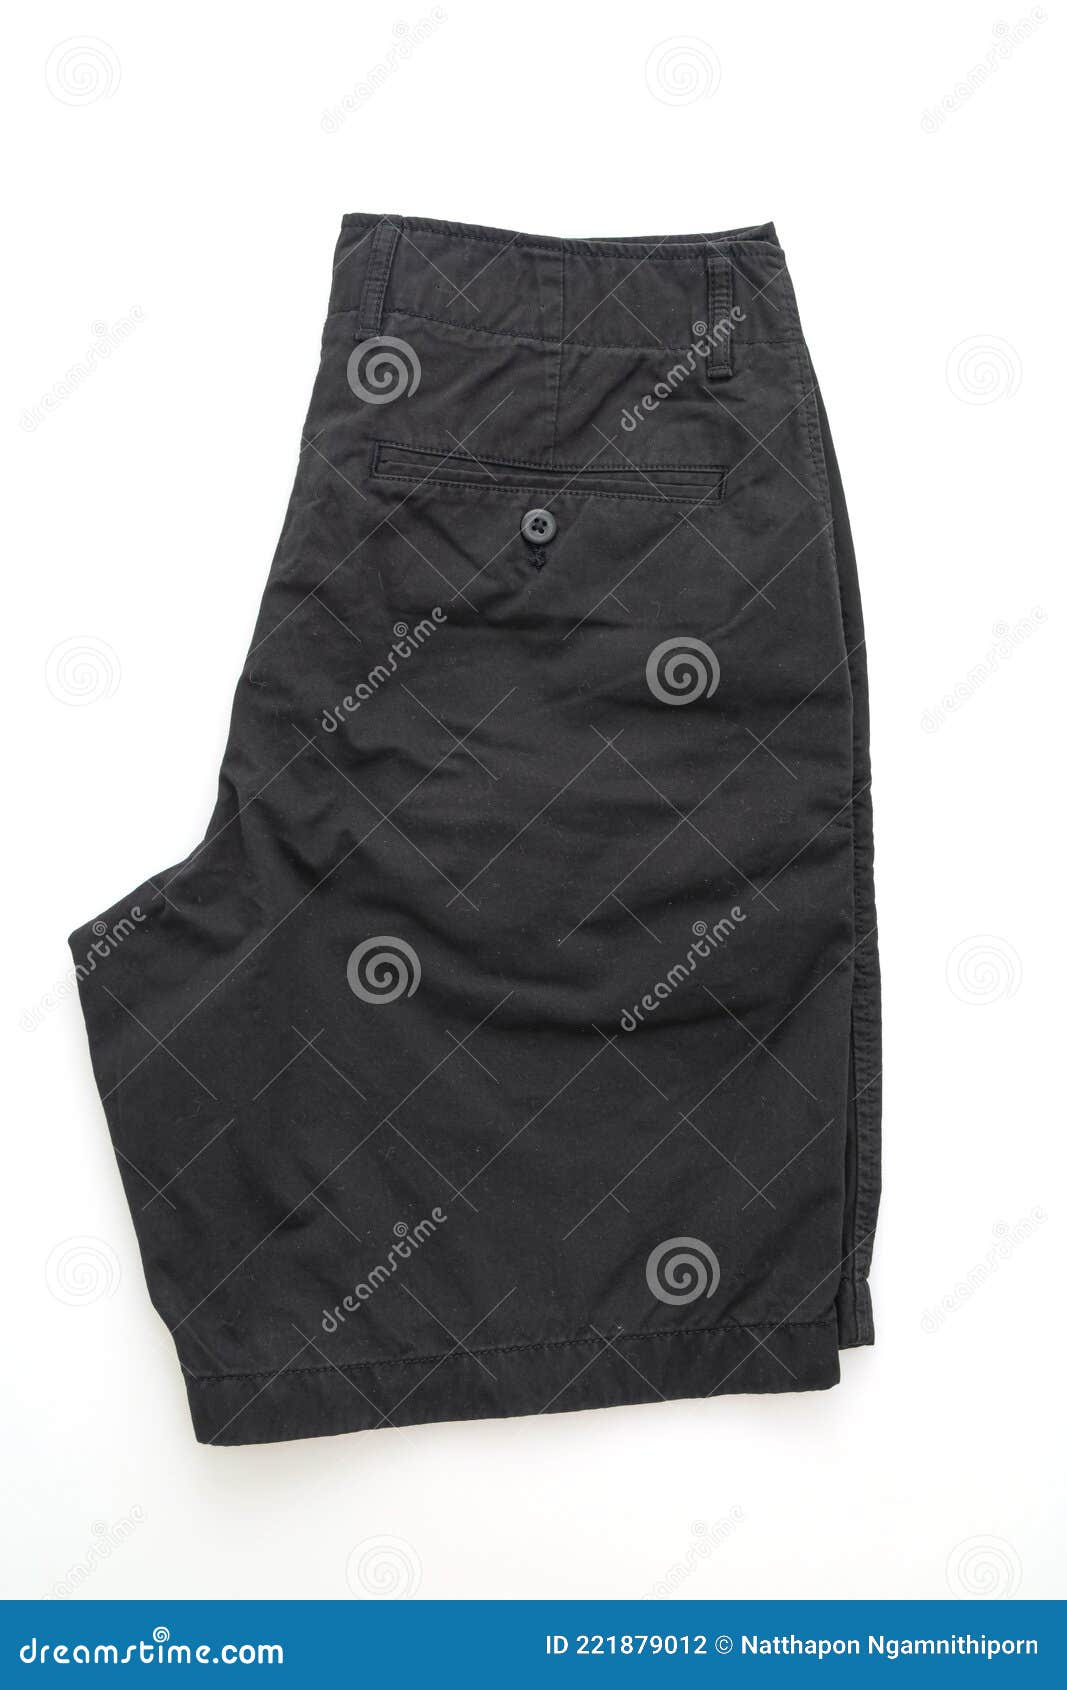 Black Short Pant Fold on White Background Stock Photo - Image of label ...